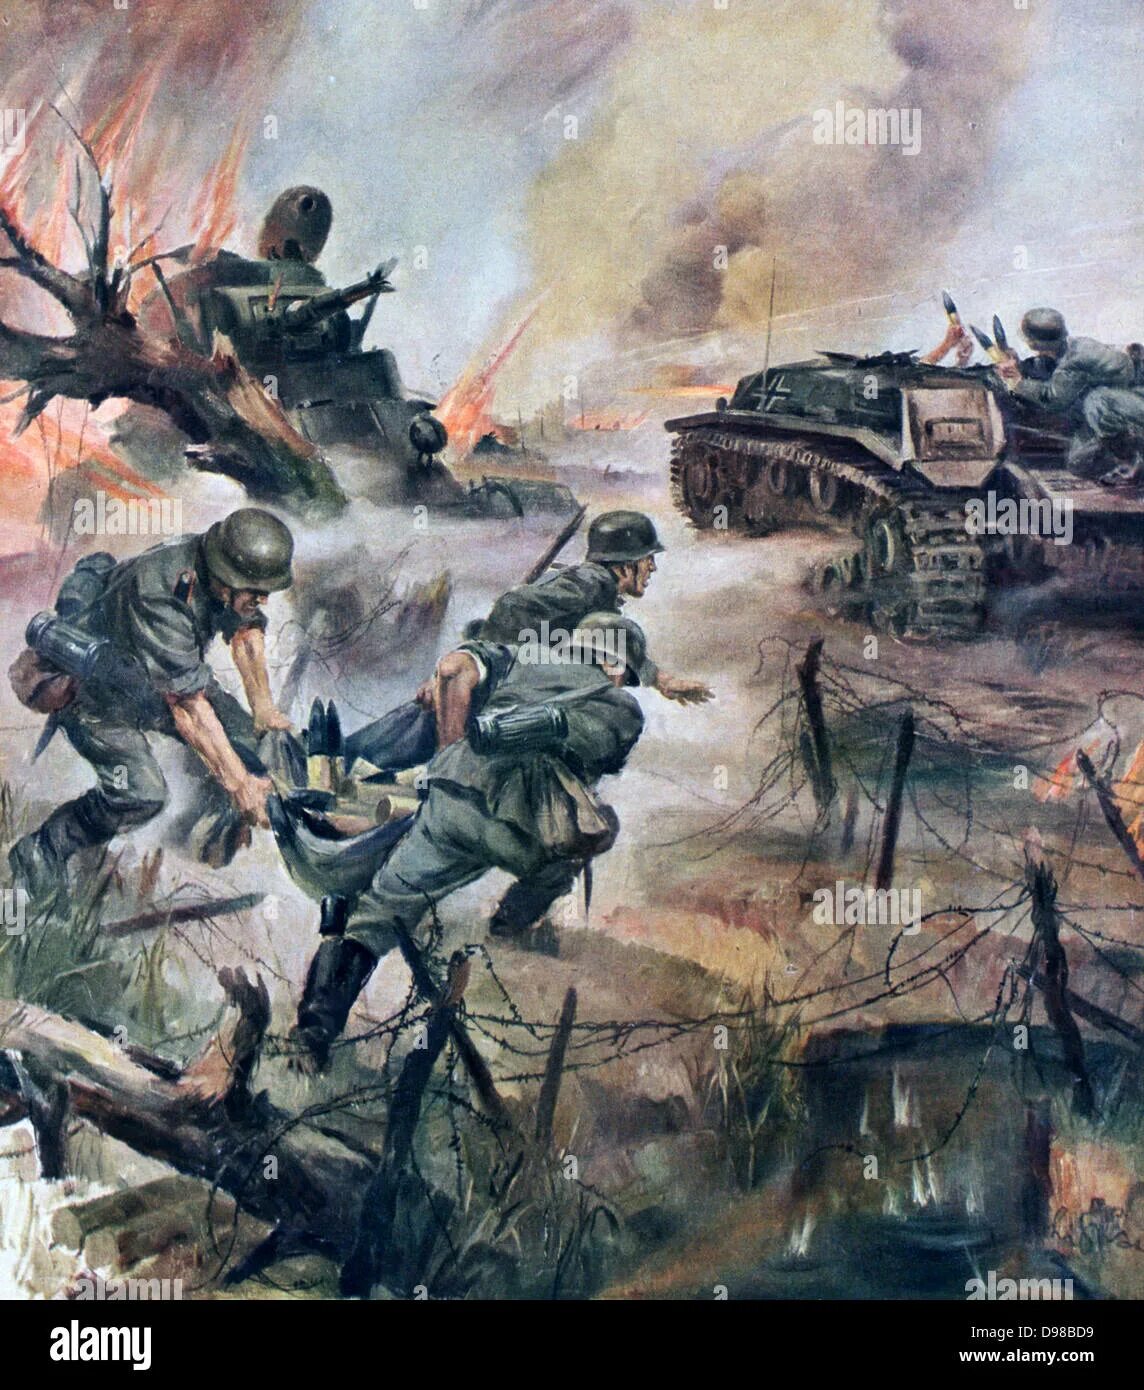 Картины на тему великой отечественной войны. Ханс лиска военные картины. Современные картины о войне. Рисунок про войну.